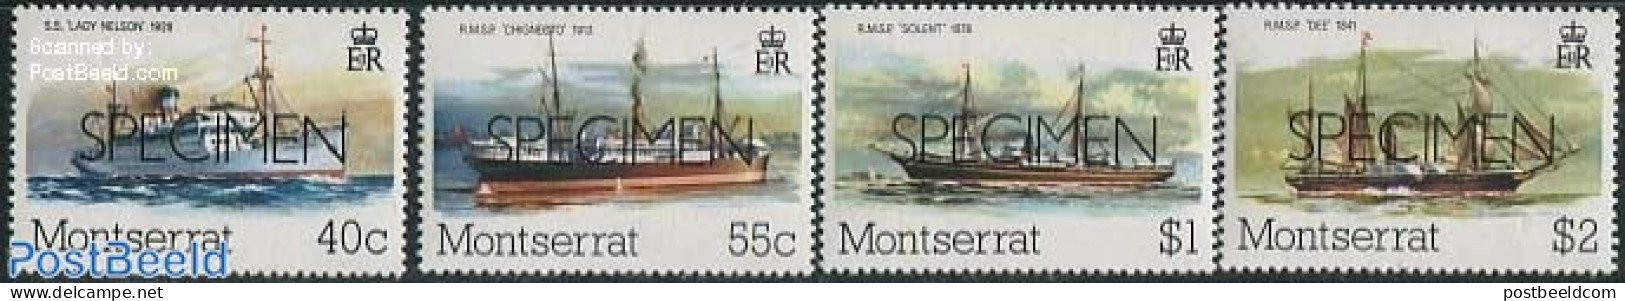 Montserrat 1980 Postal Ships 4v, SPECIMEN, Mint NH, Transport - Post - Ships And Boats - Poste